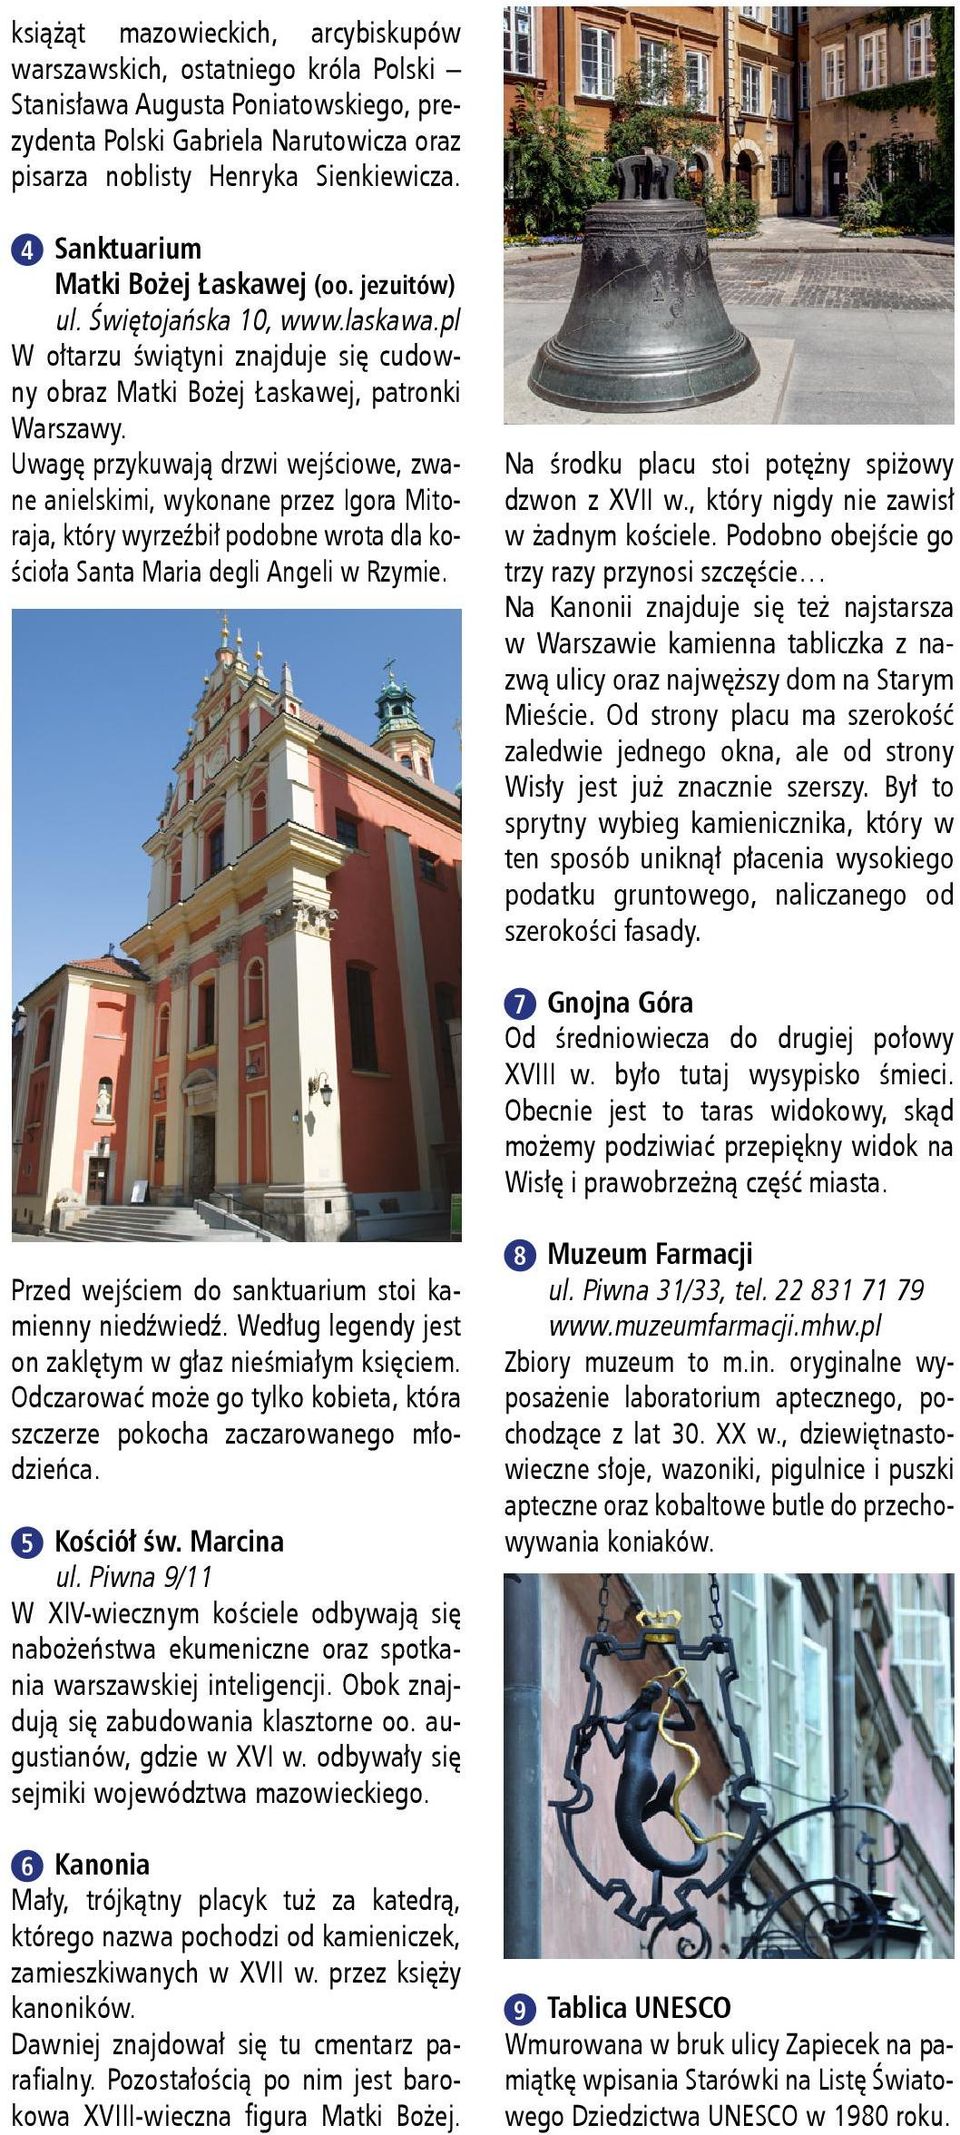 Męczeństwa św. Jana Chrzciciela 4 Sanktuarium Matki Bożej Łaskawej Patronki Warszawy (oo. jezuitów) 6 Kanonia W arszawska Starówka to miejsce wyjątkowe!